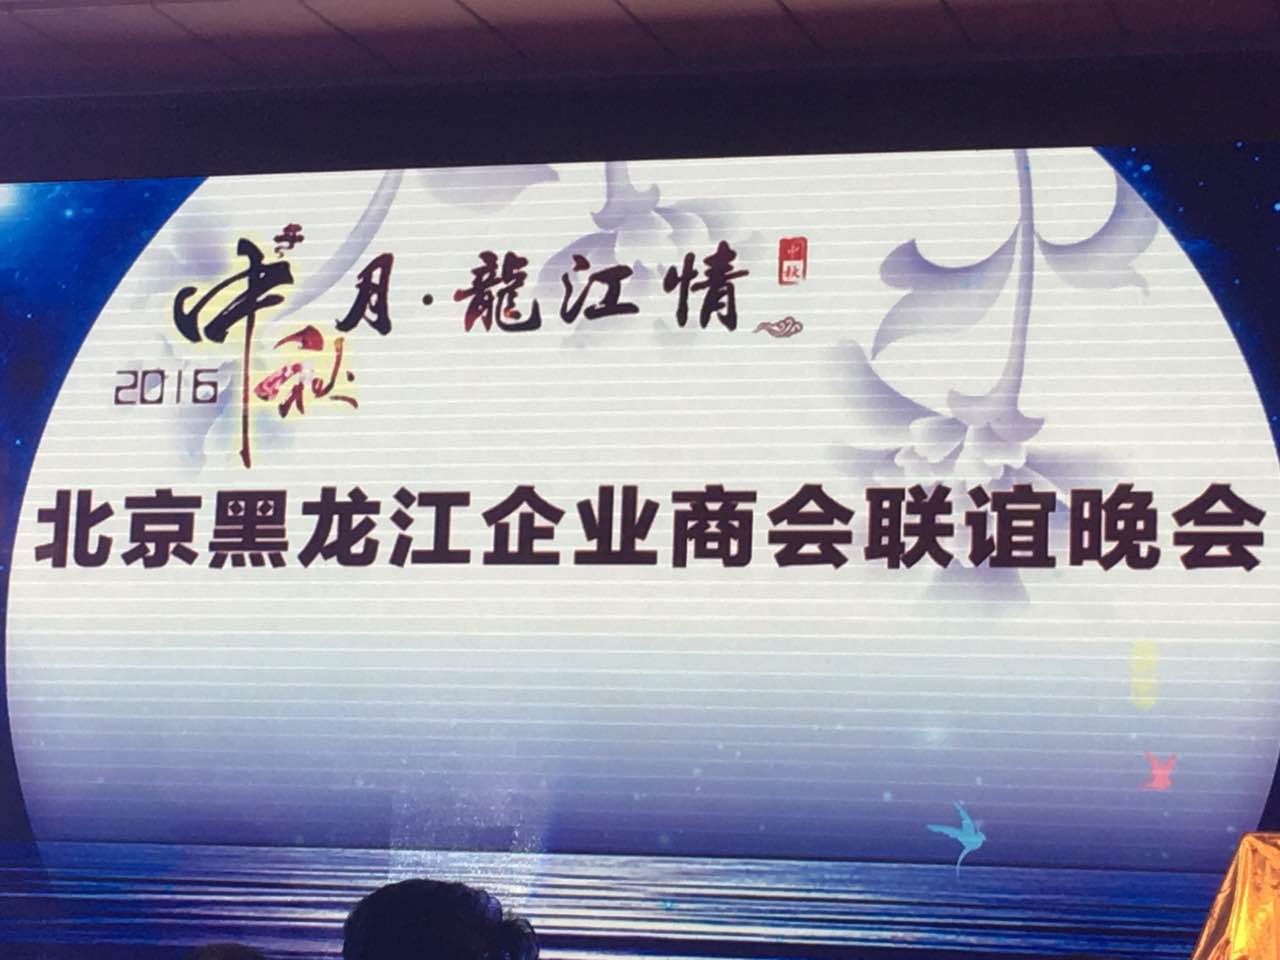 澳门尼威斯人总裁王元圆（证券代码831999）应邀参加北京黑龙江企业商会联谊晚会